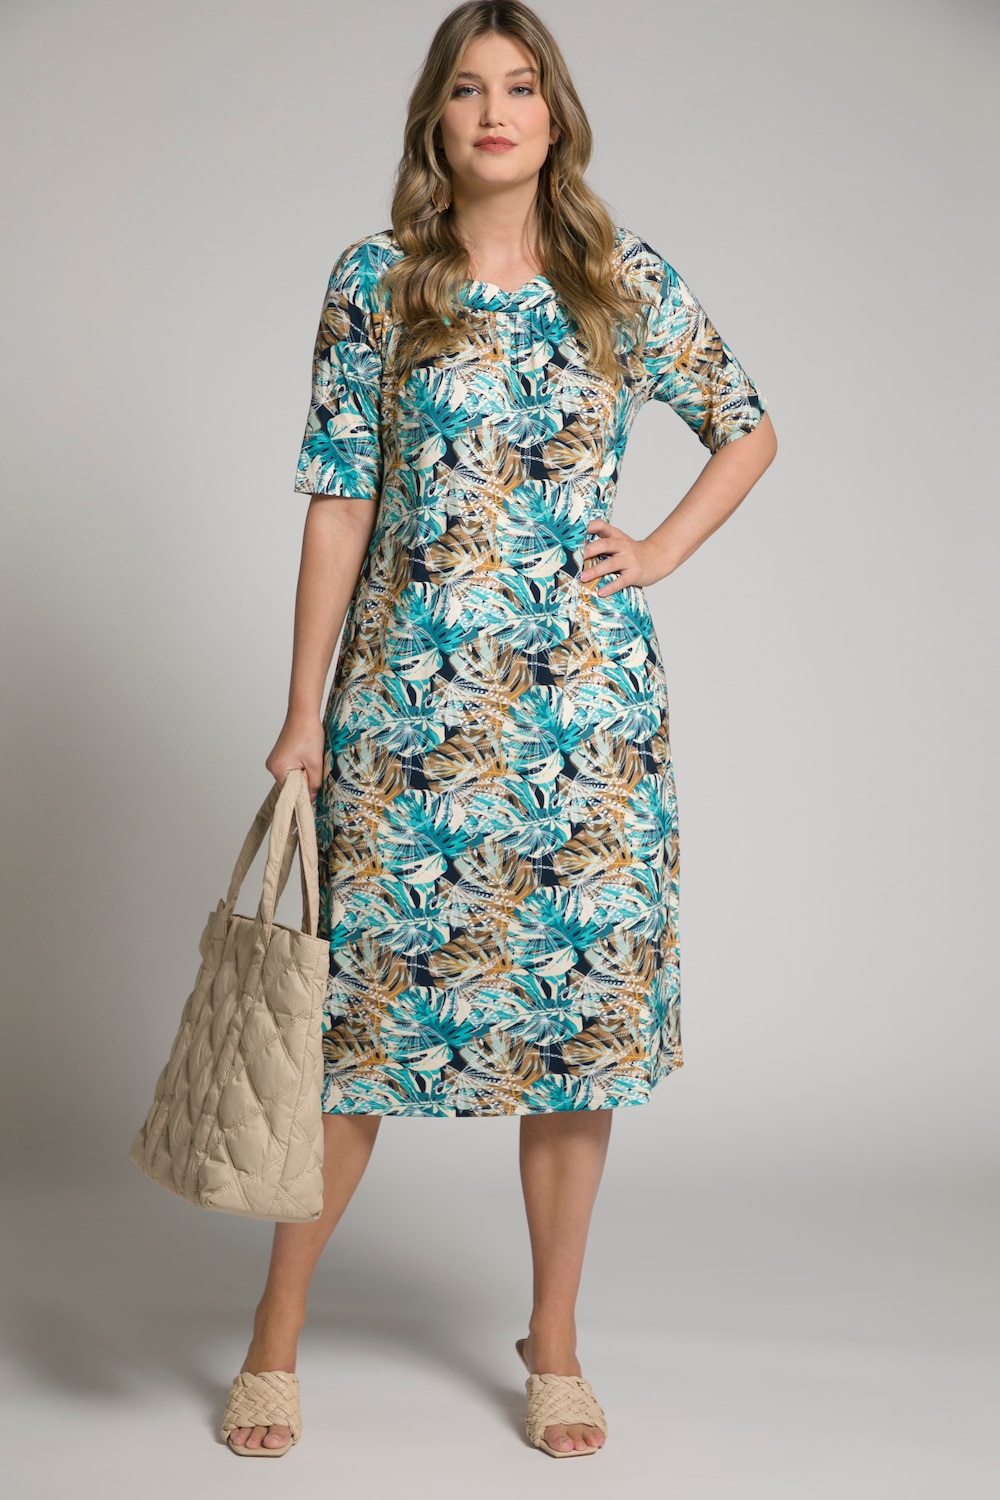 Plus Size Palm Print Dress, Woman, blue, size: 16/18, viscose, Ulla Popken